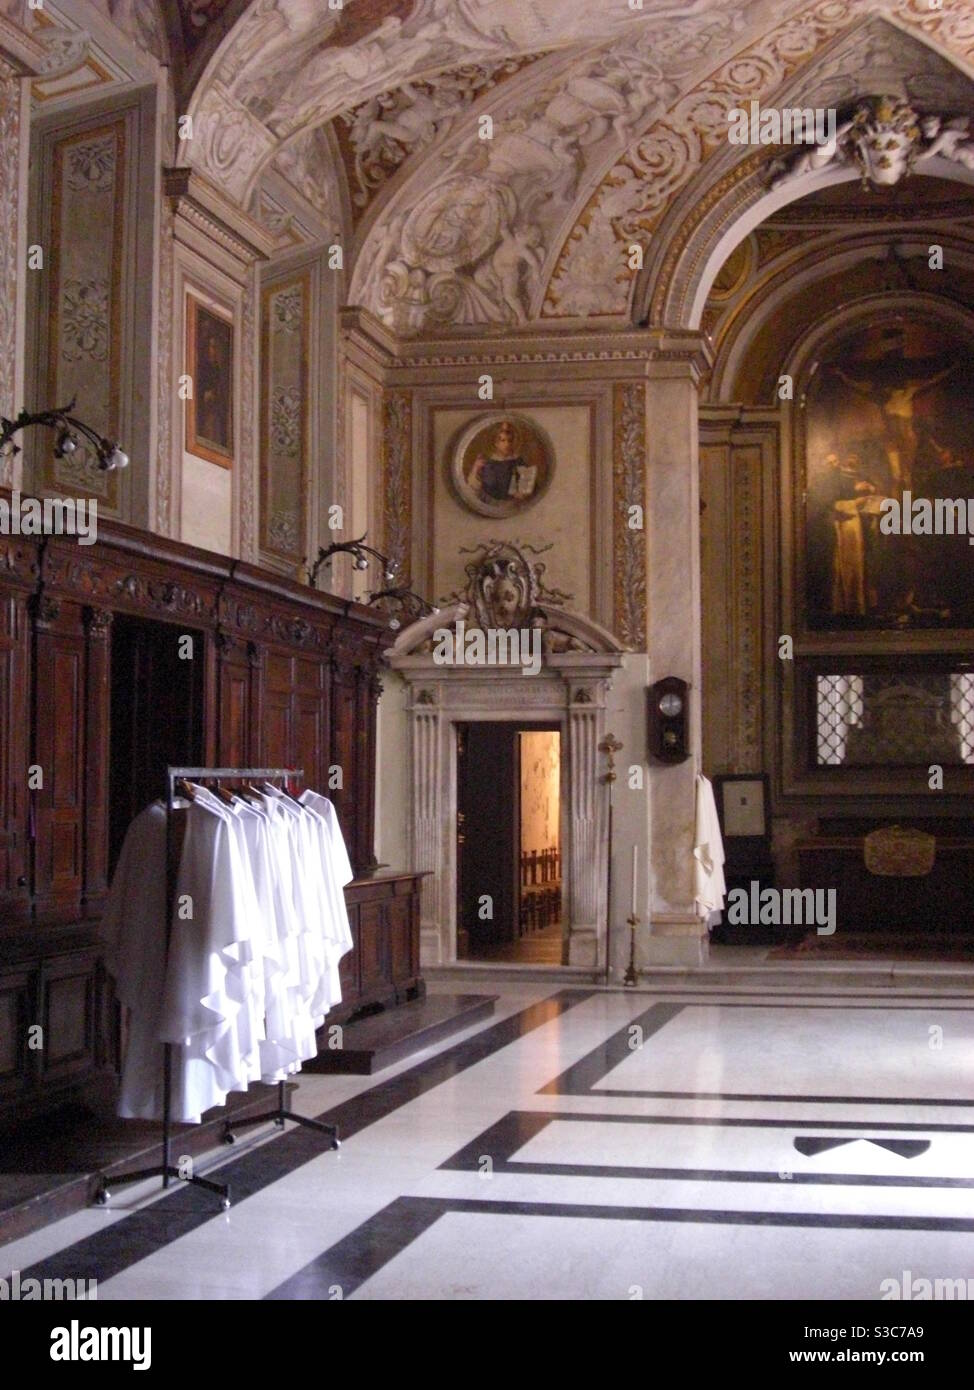 Katholische Priestergewänder hängen an der Schiene in einem prächtigen und opulenten Kathedralenraum in Rom Italien. Stockfoto